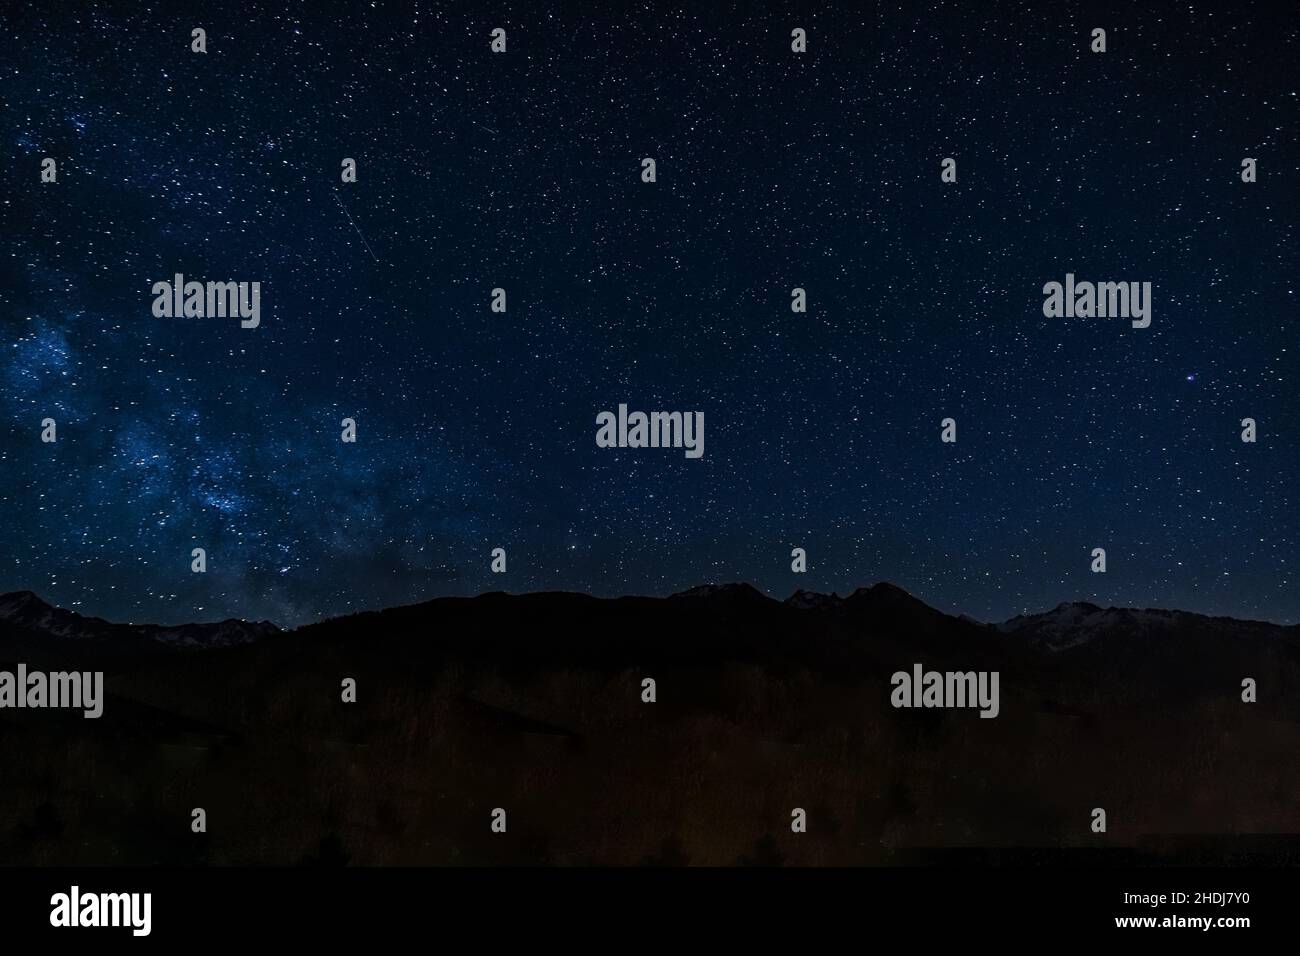 stars, night sky, universe, star, night skies, universes Stock Photo